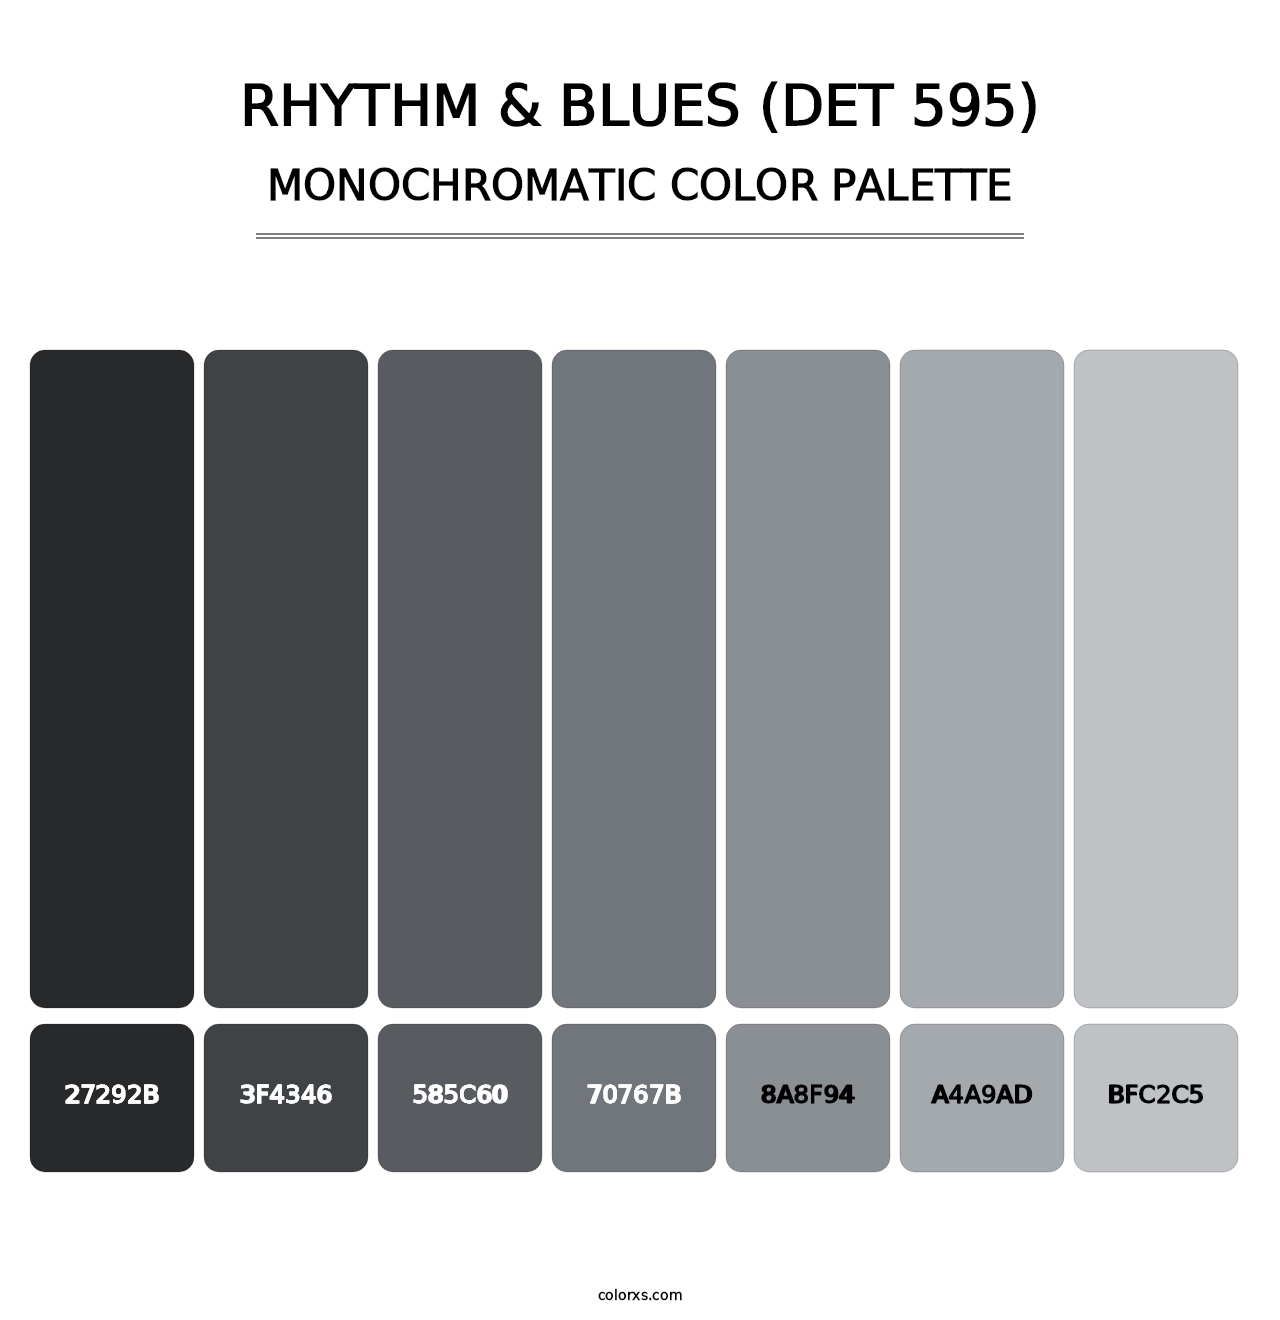 Rhythm & Blues (DET 595) - Monochromatic Color Palette